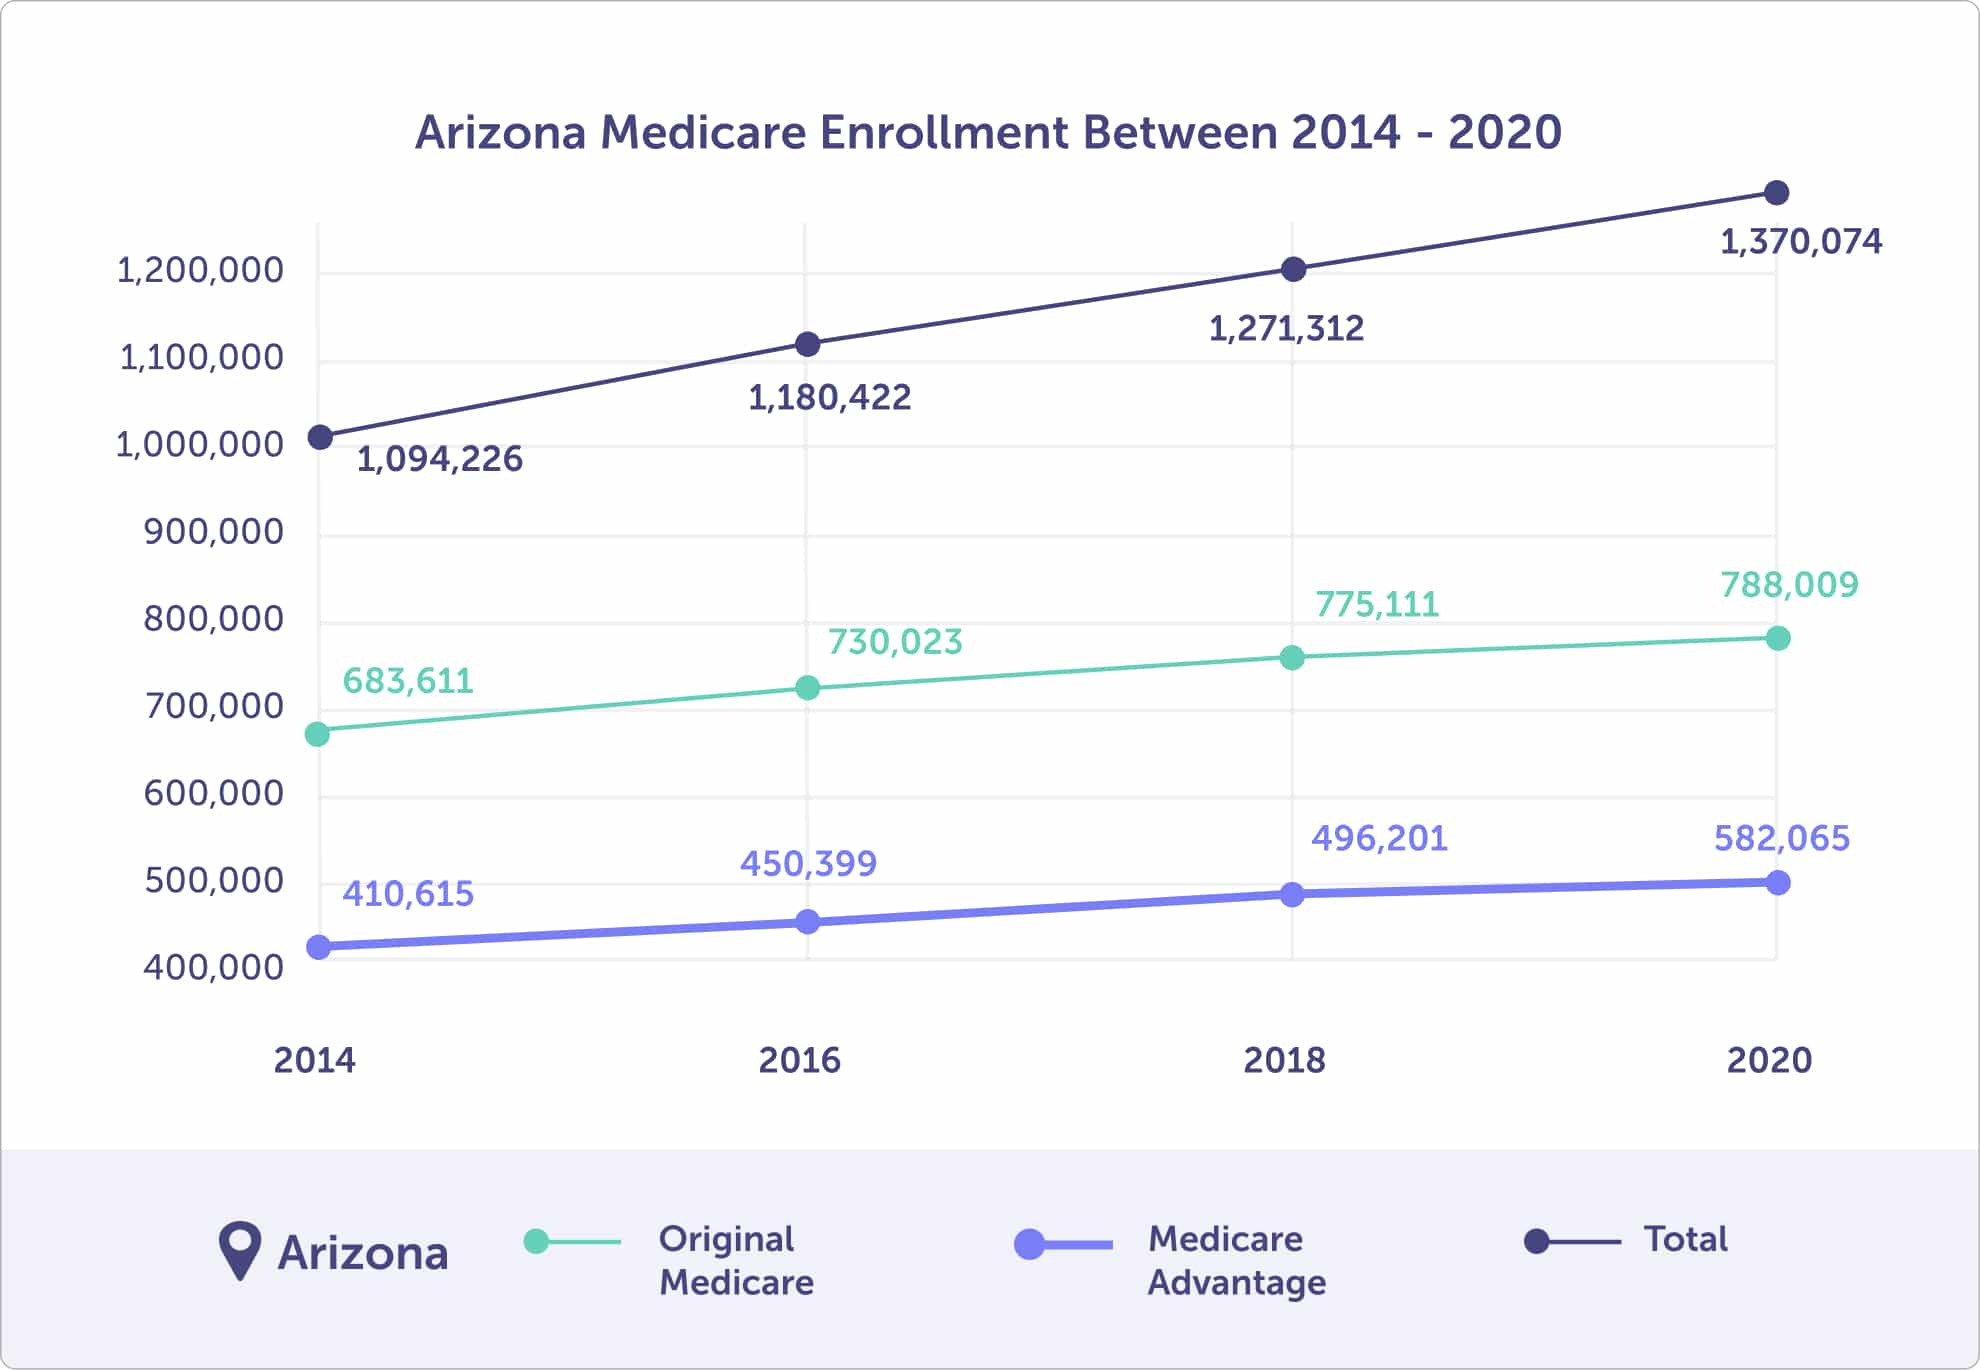 Arizona Medicare enrollment between 2014 and 2020